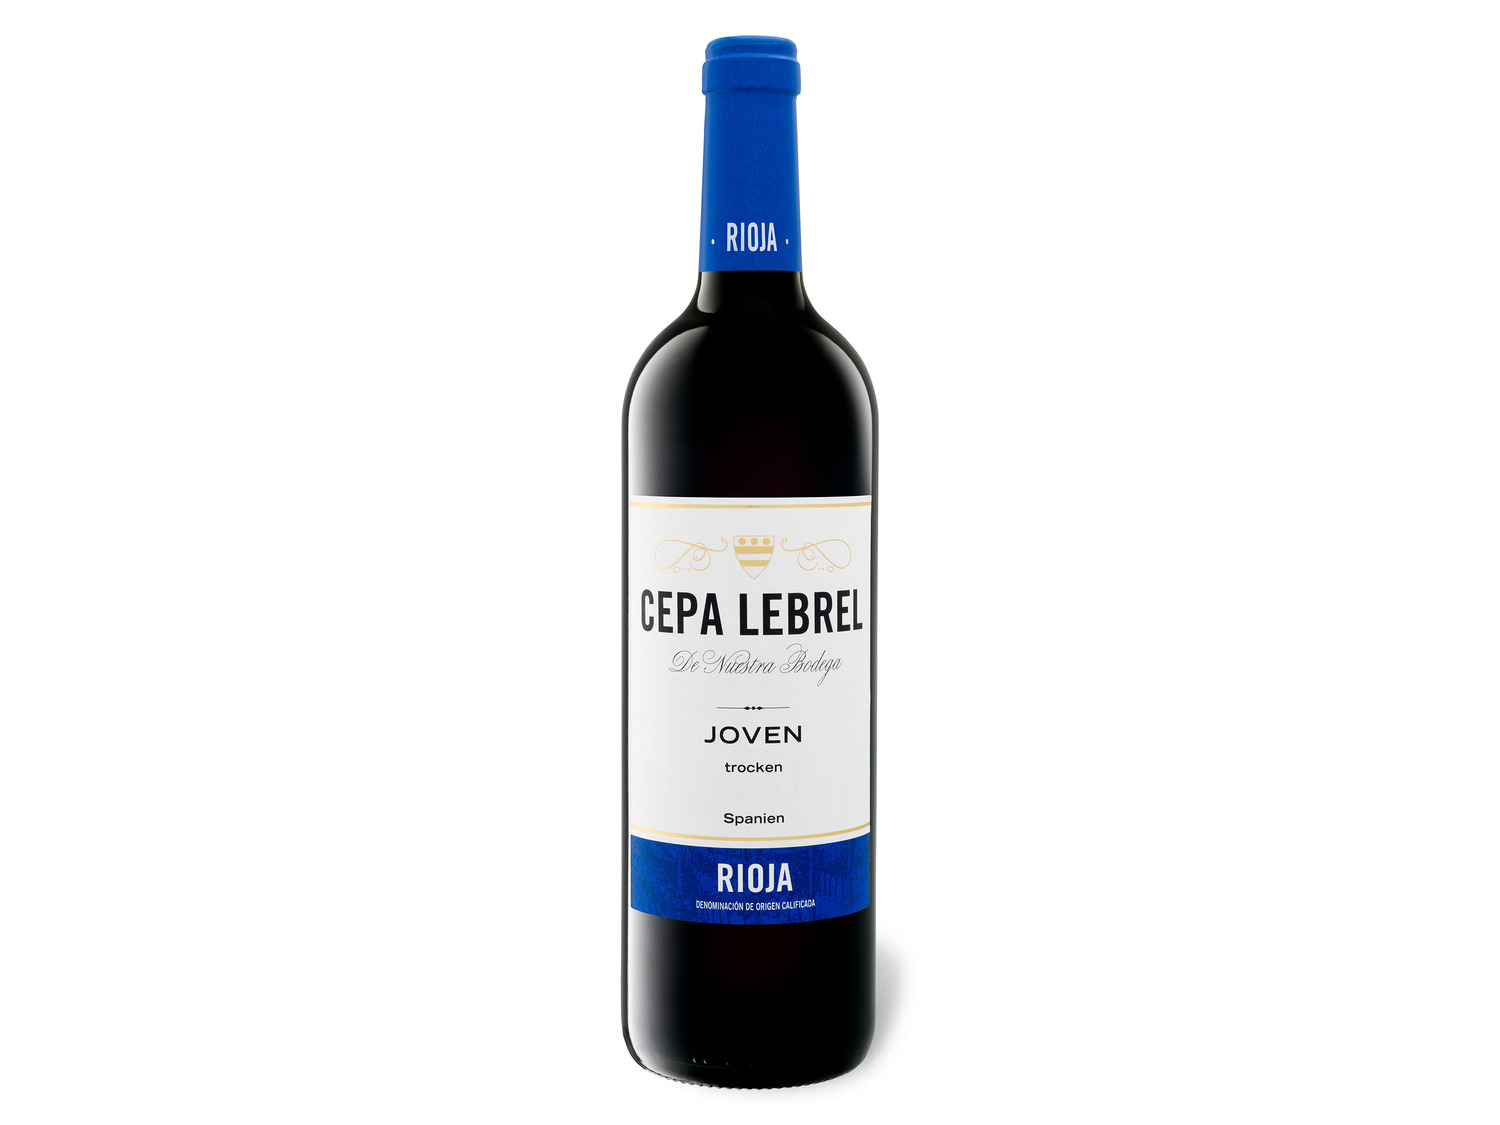 Cepa Lebrel Rioja DOCa Joven trocken Rotwein 2021